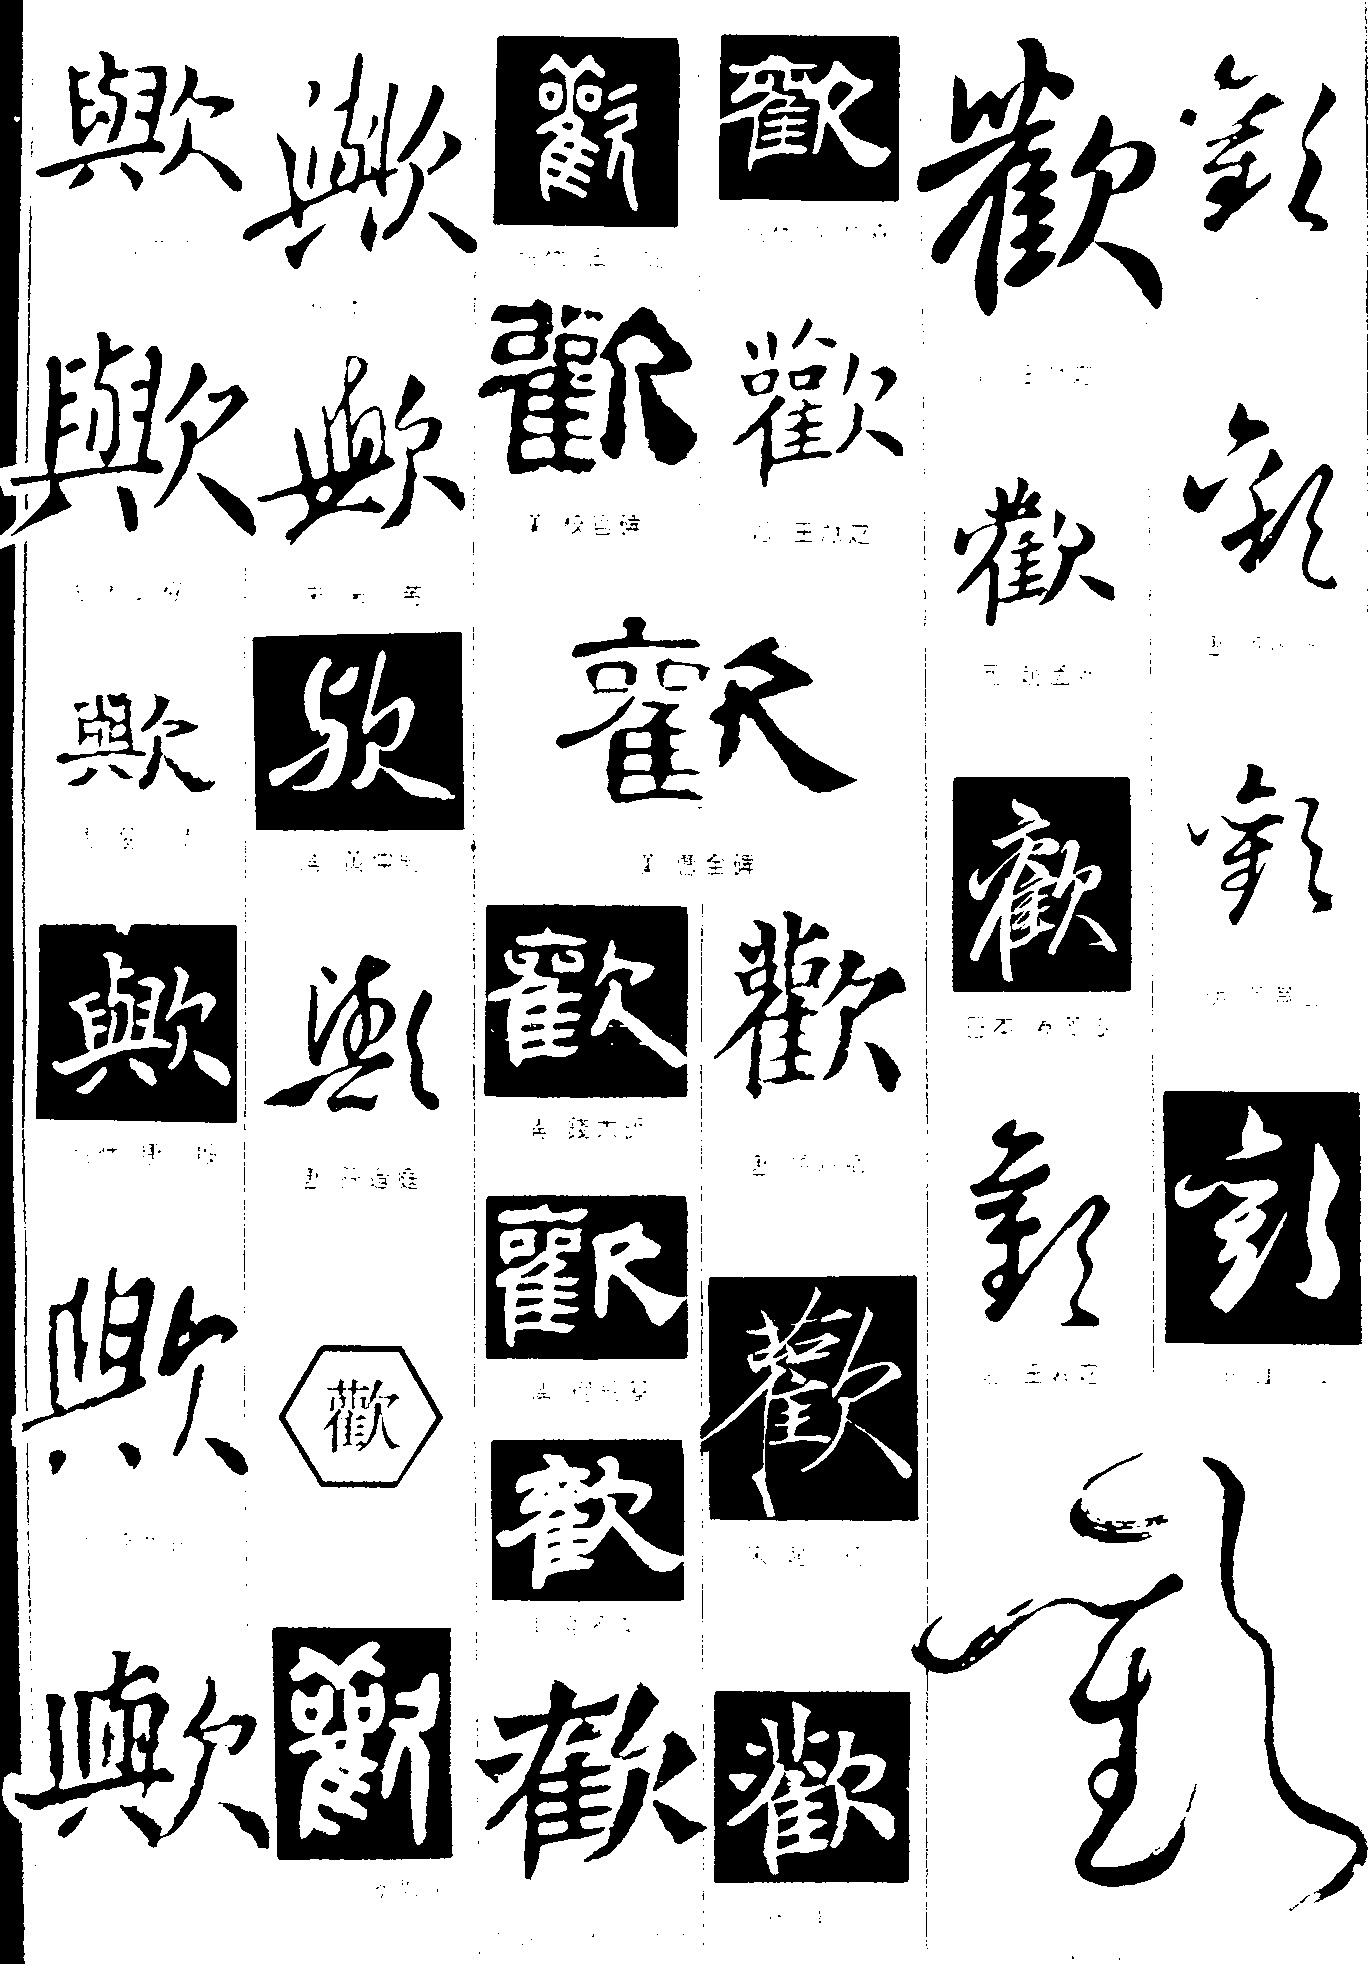 欢字卡通手书免费字体下载 - 中文字体免费下载尽在字体家